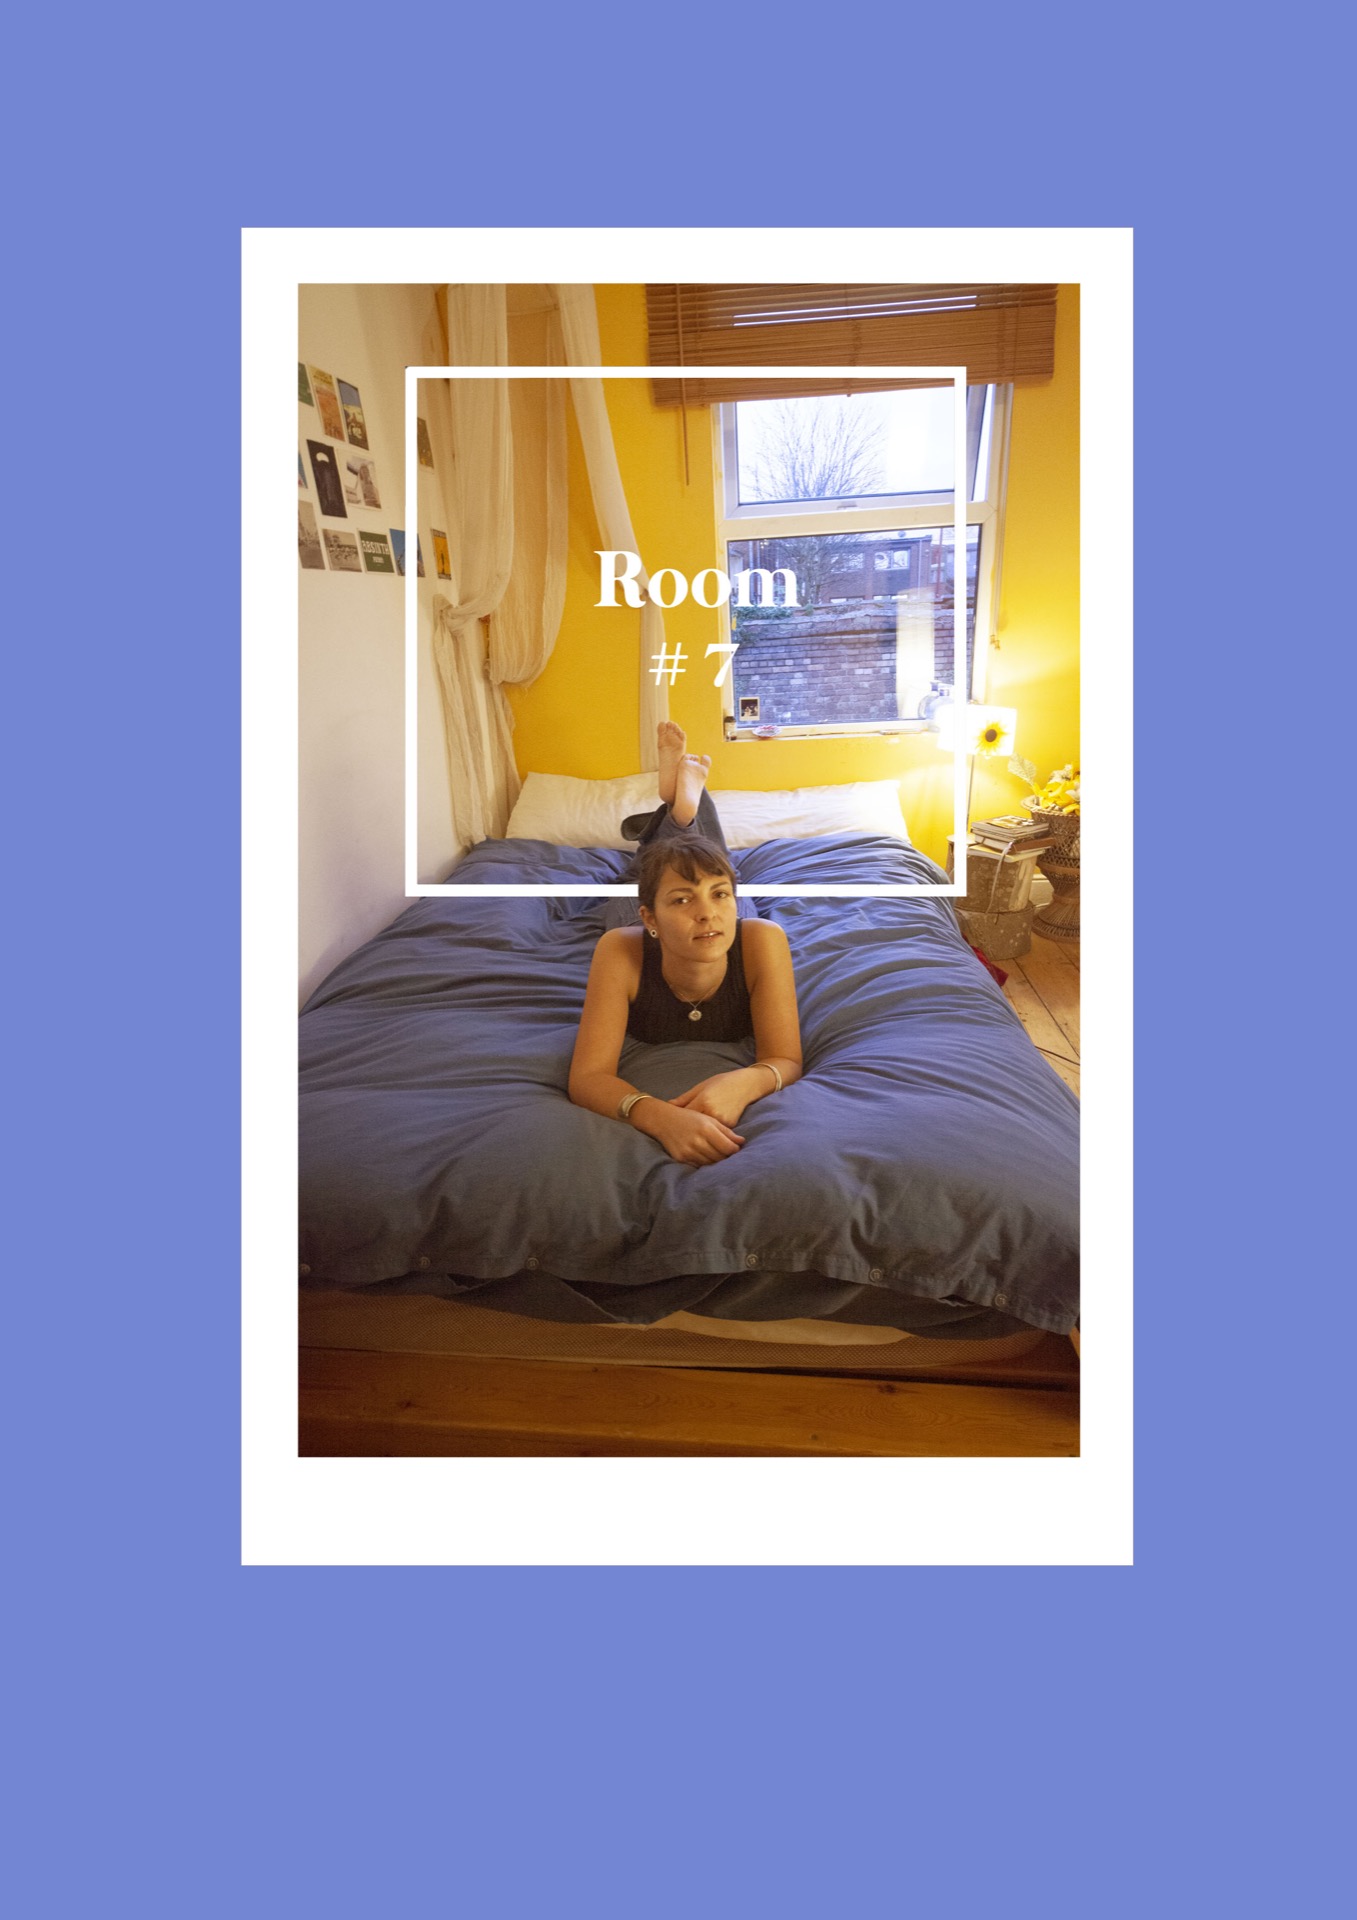 Room #7